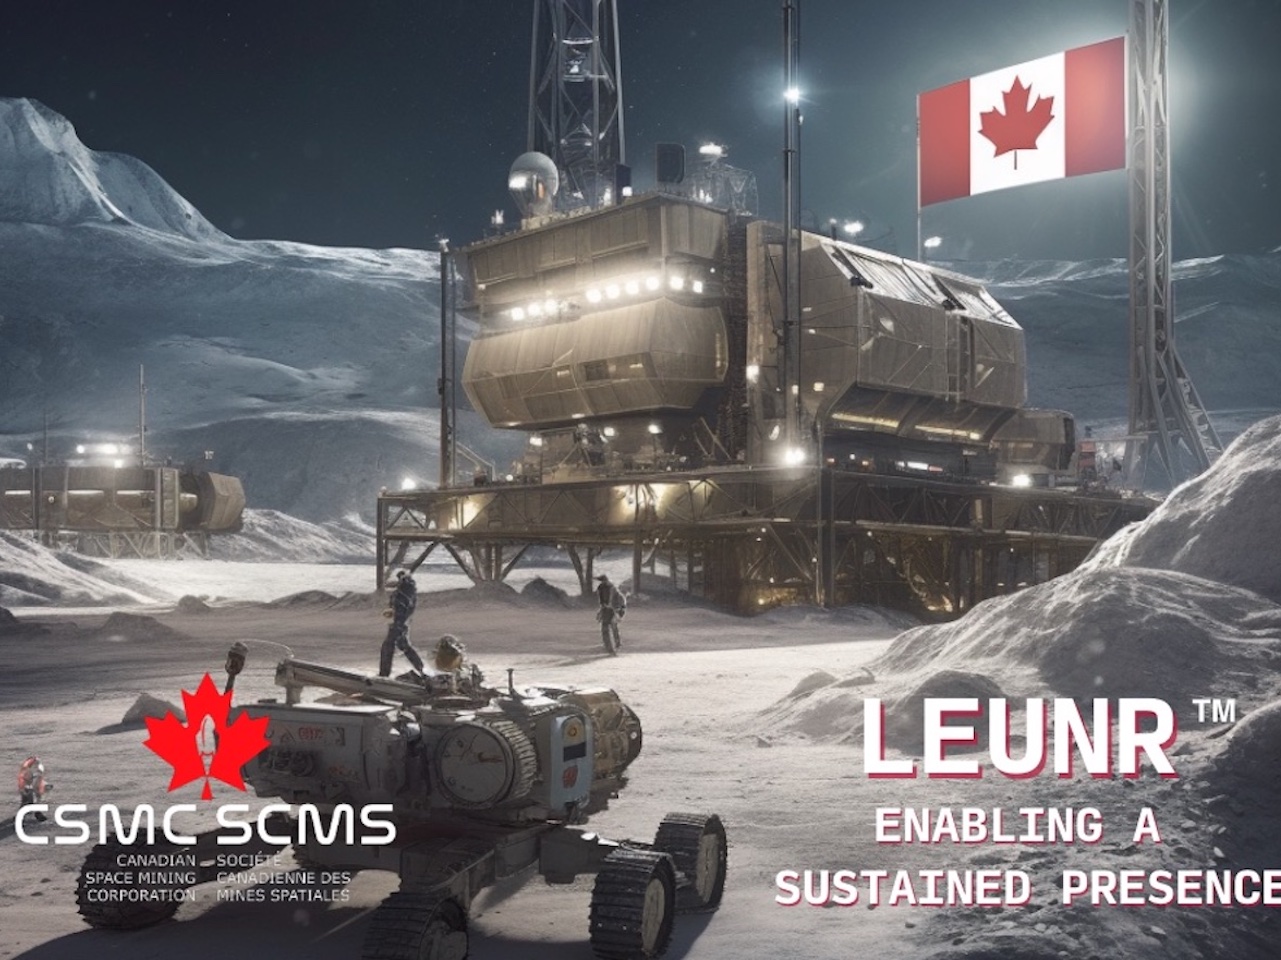 カナダ企業、月面での原子炉を計画--宇宙機関が100万カナダドルを提供